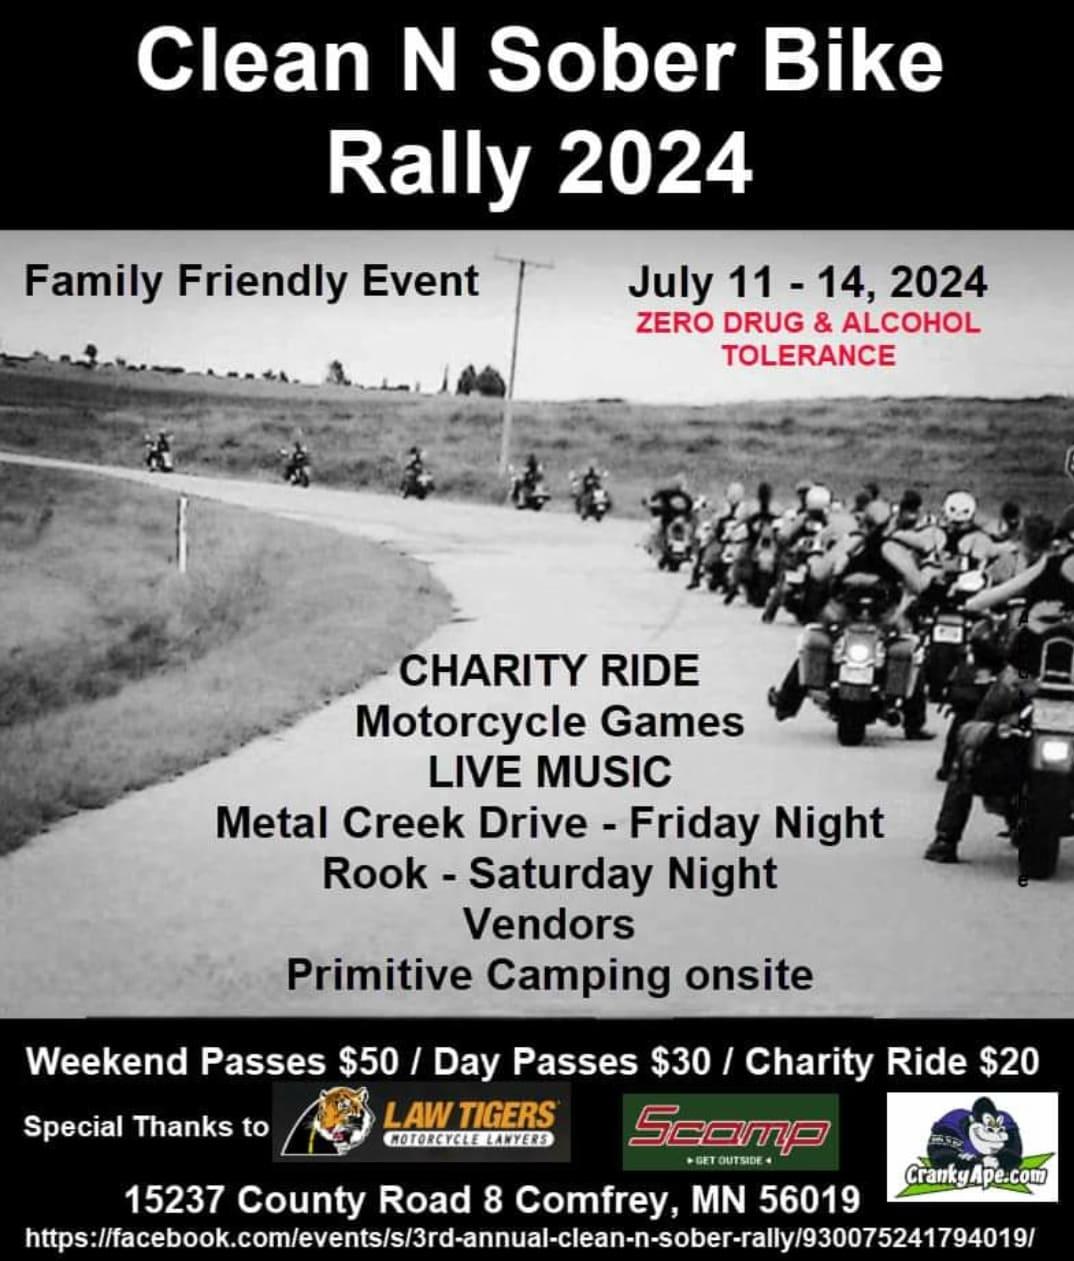 Clean N Sober Bike Rally 2024